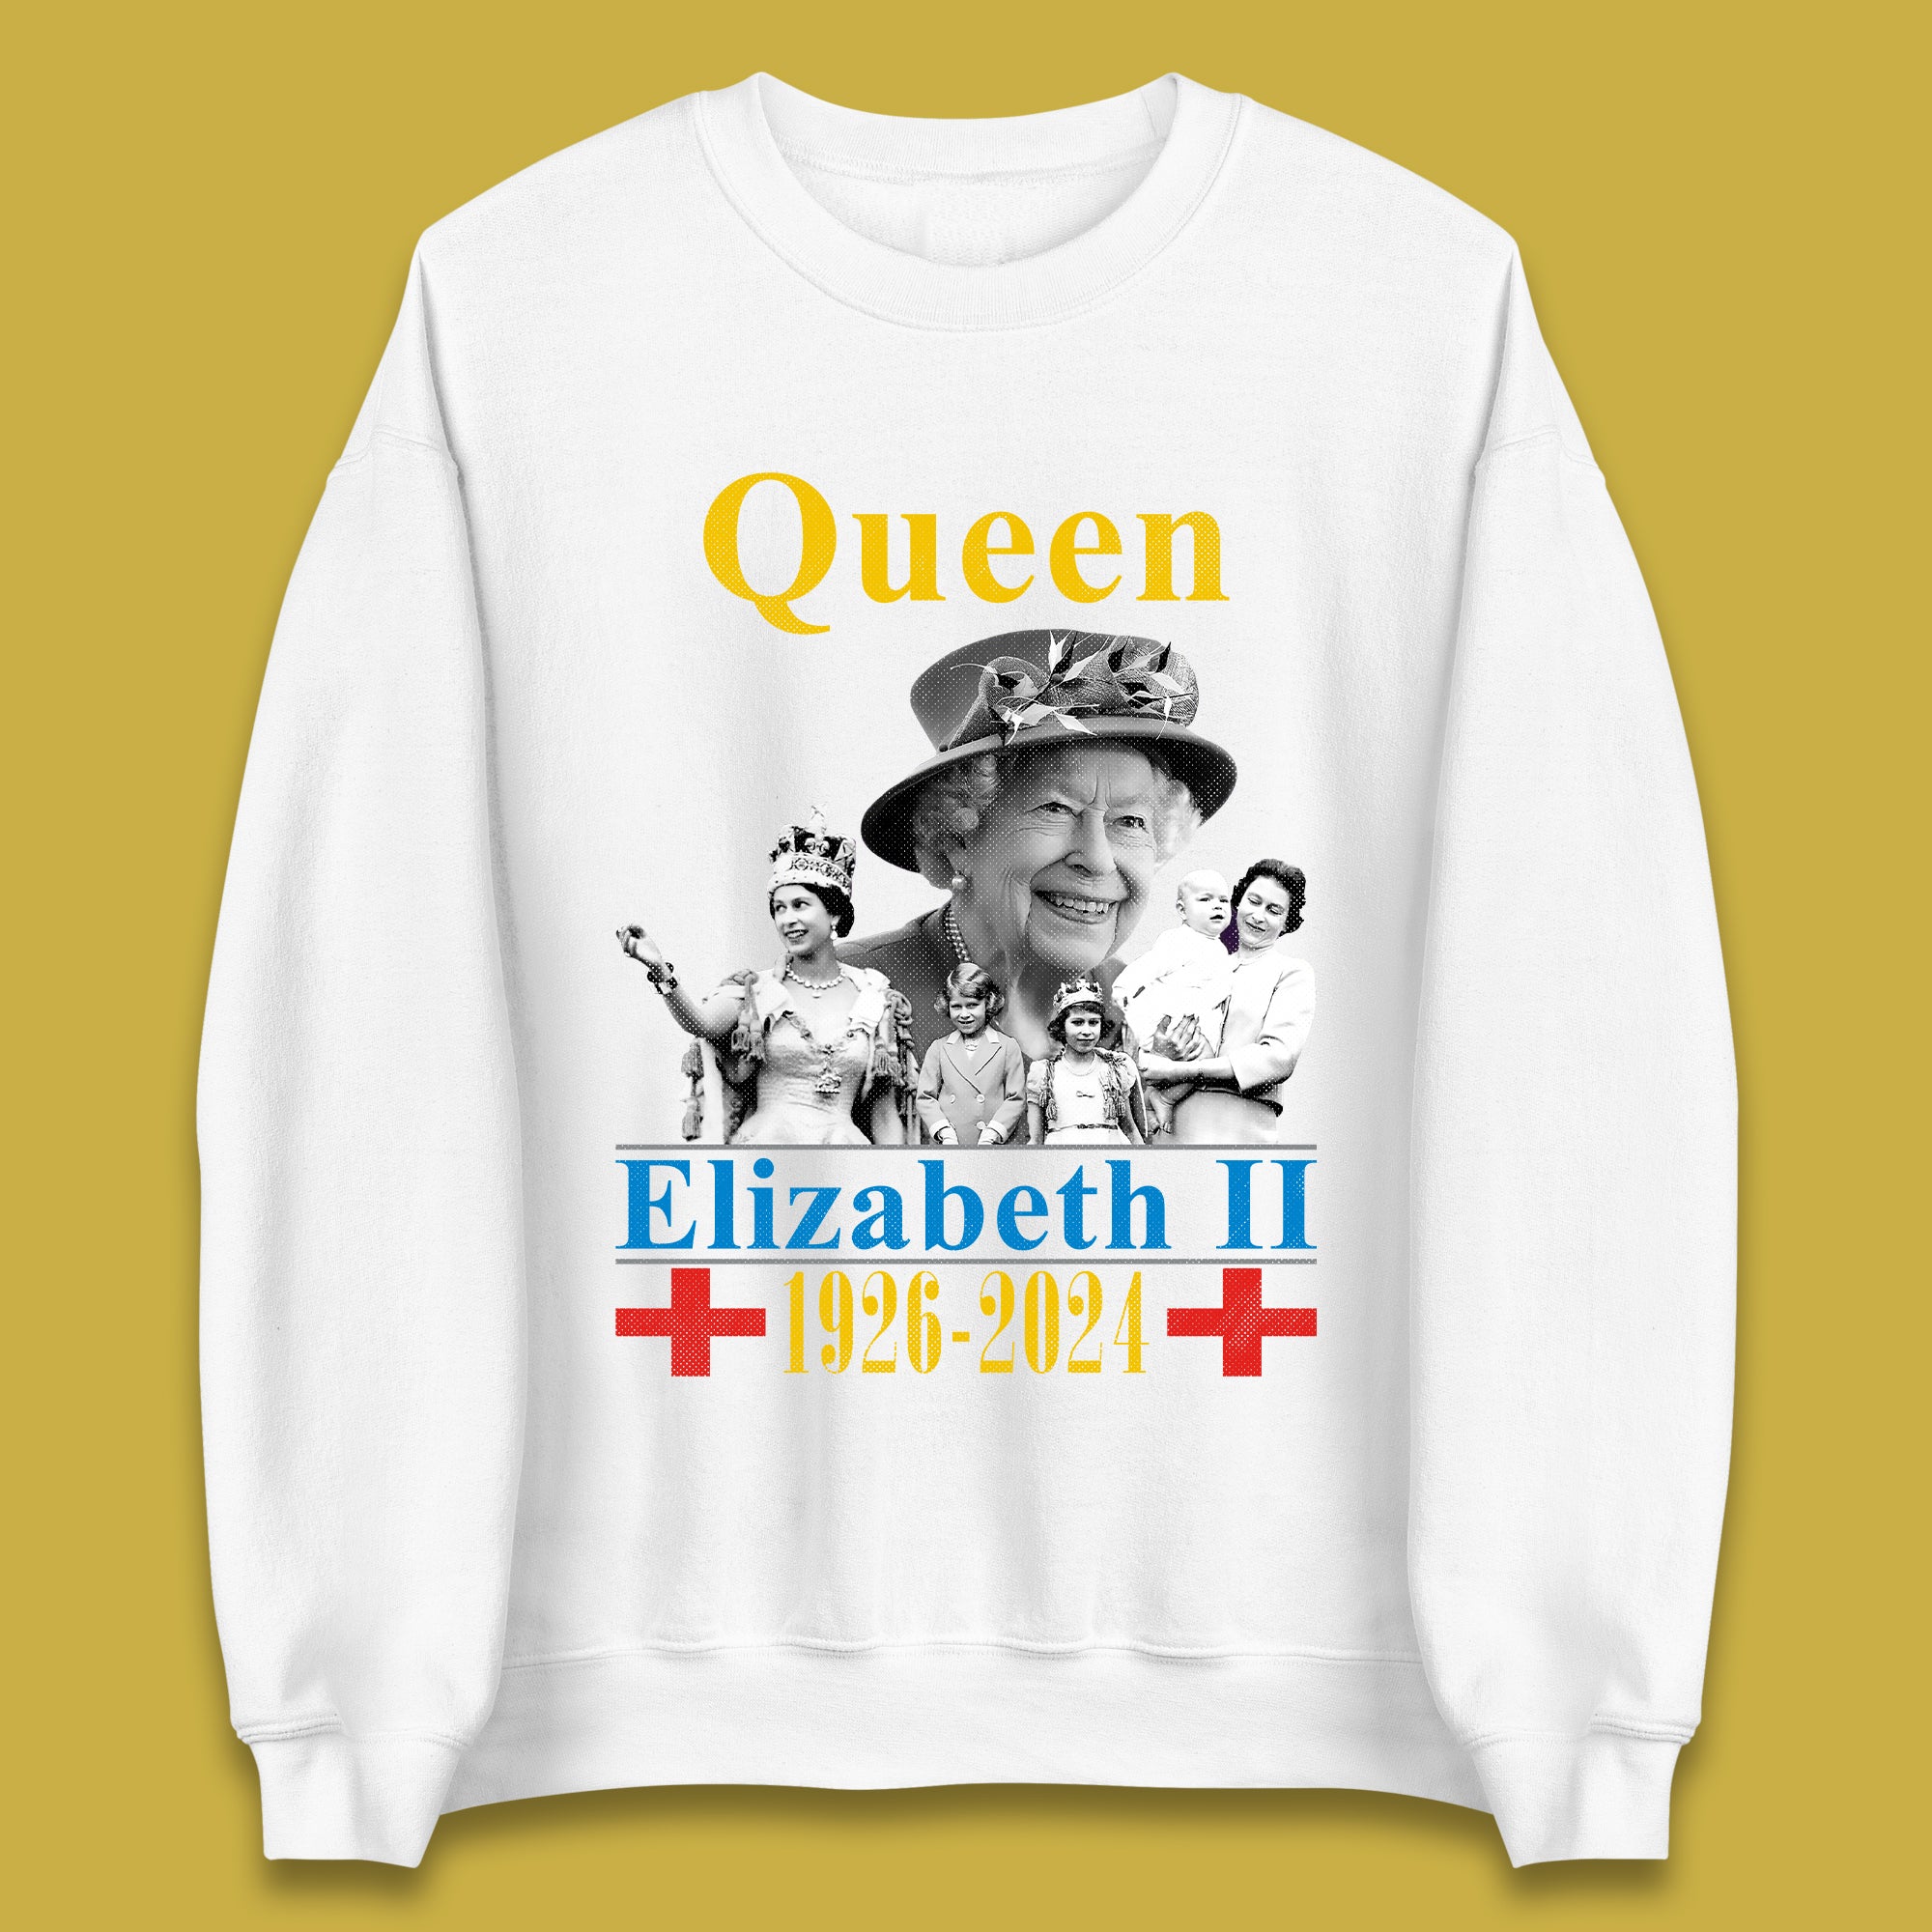 Queen Elizabeth II Unisex Sweatshirt